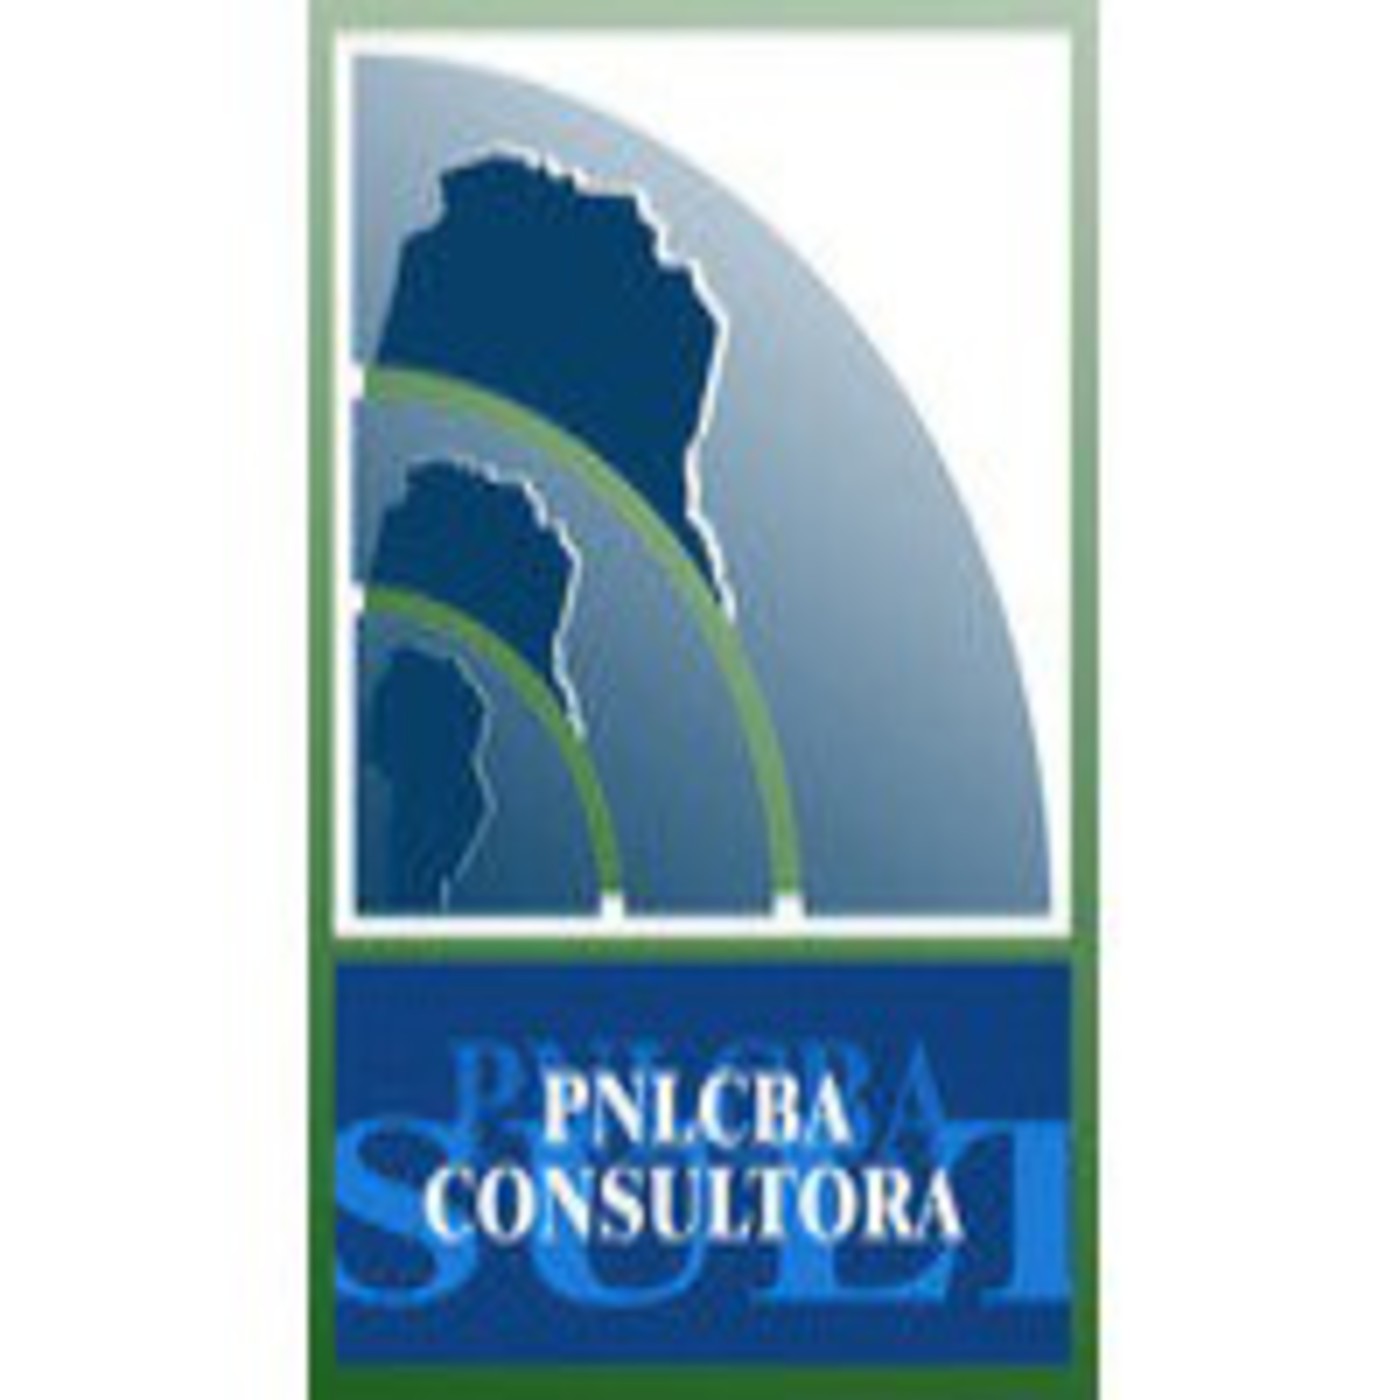 Podcast PNLCBA CONSULTORA